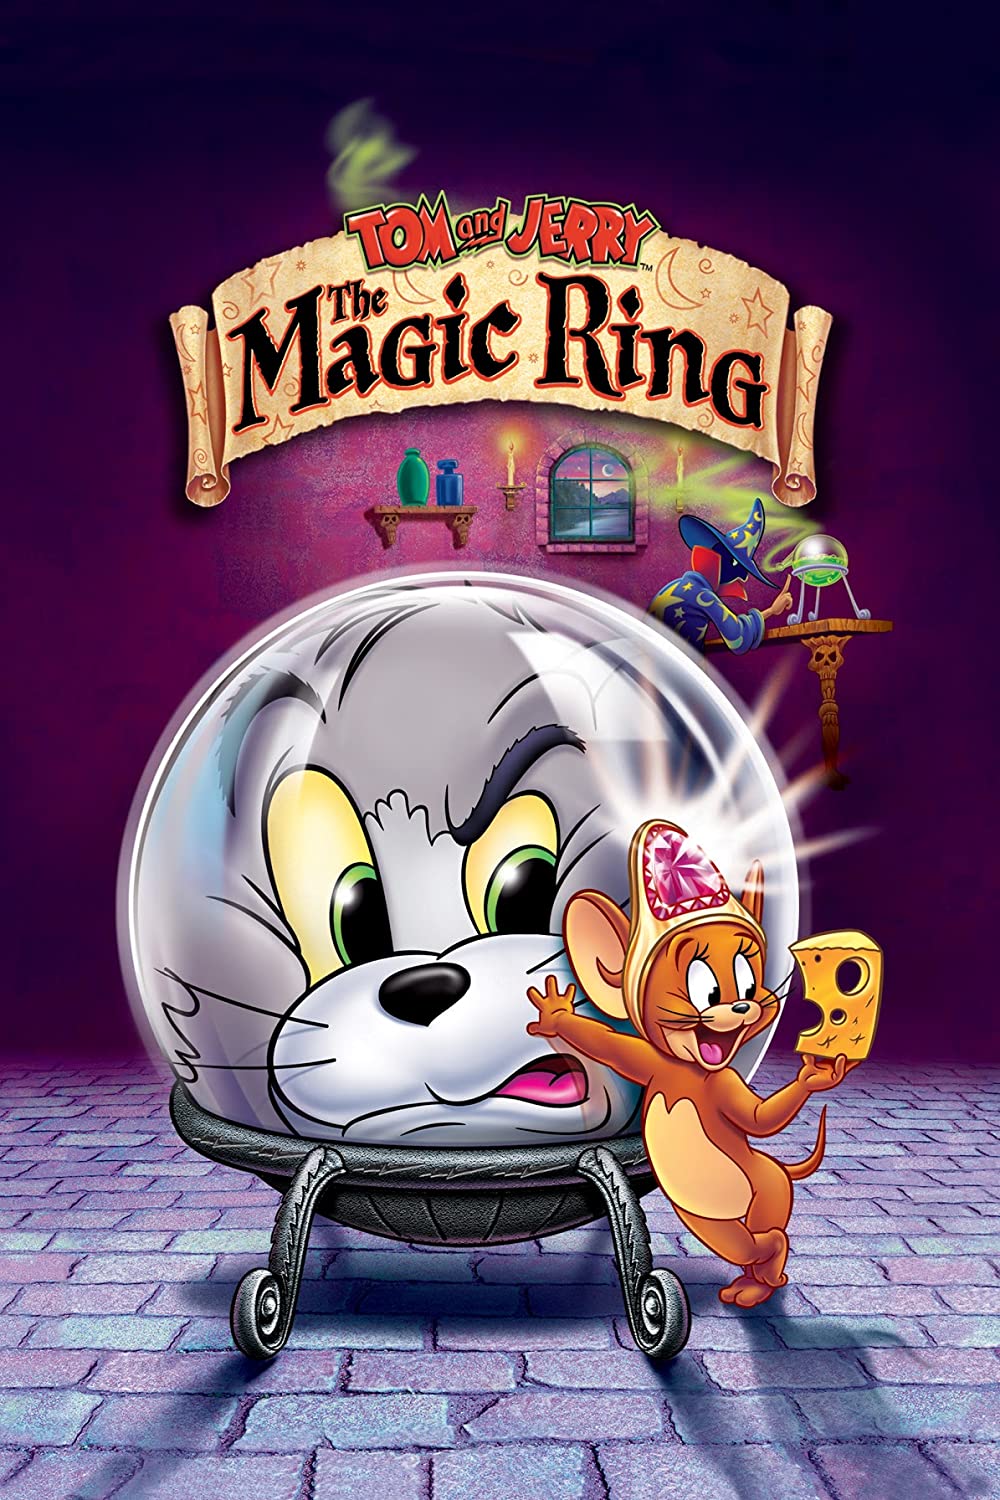 ดูหนังออนไลน์ฟรี Tom and Jerry The Magic Ring (2002) หนังเต็มเรื่อง หนังมาสเตอร์ ดูหนังHD ดูหนังออนไลน์ ดูหนังใหม่